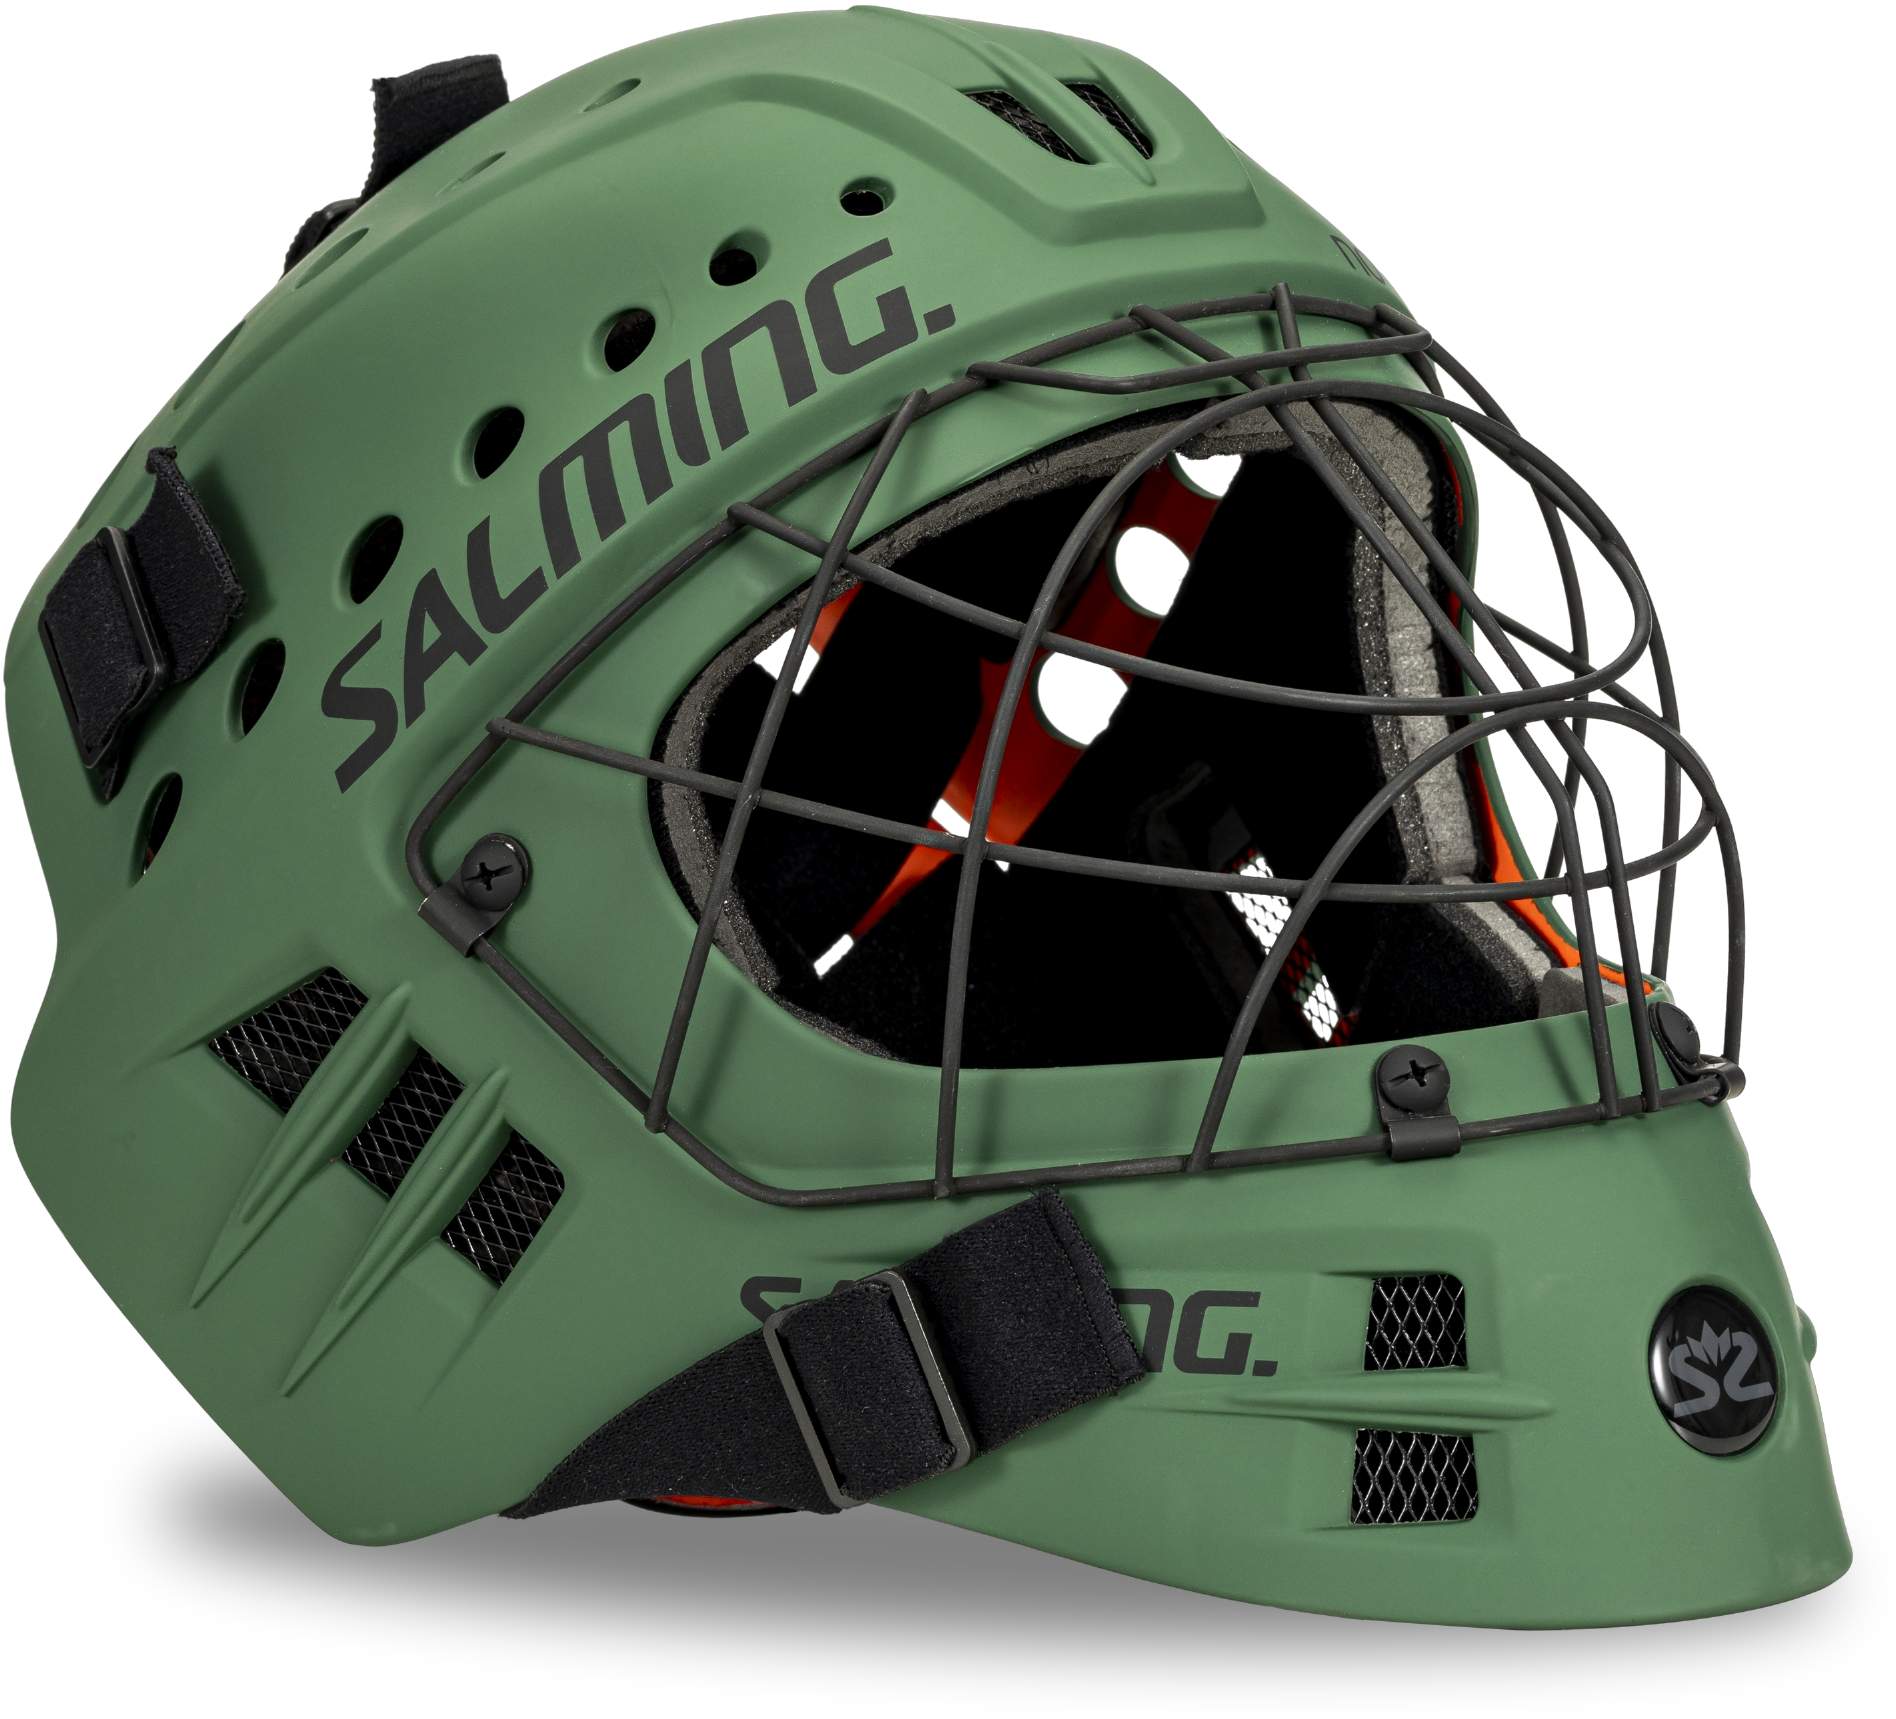 Floorball goalkeeper helmet